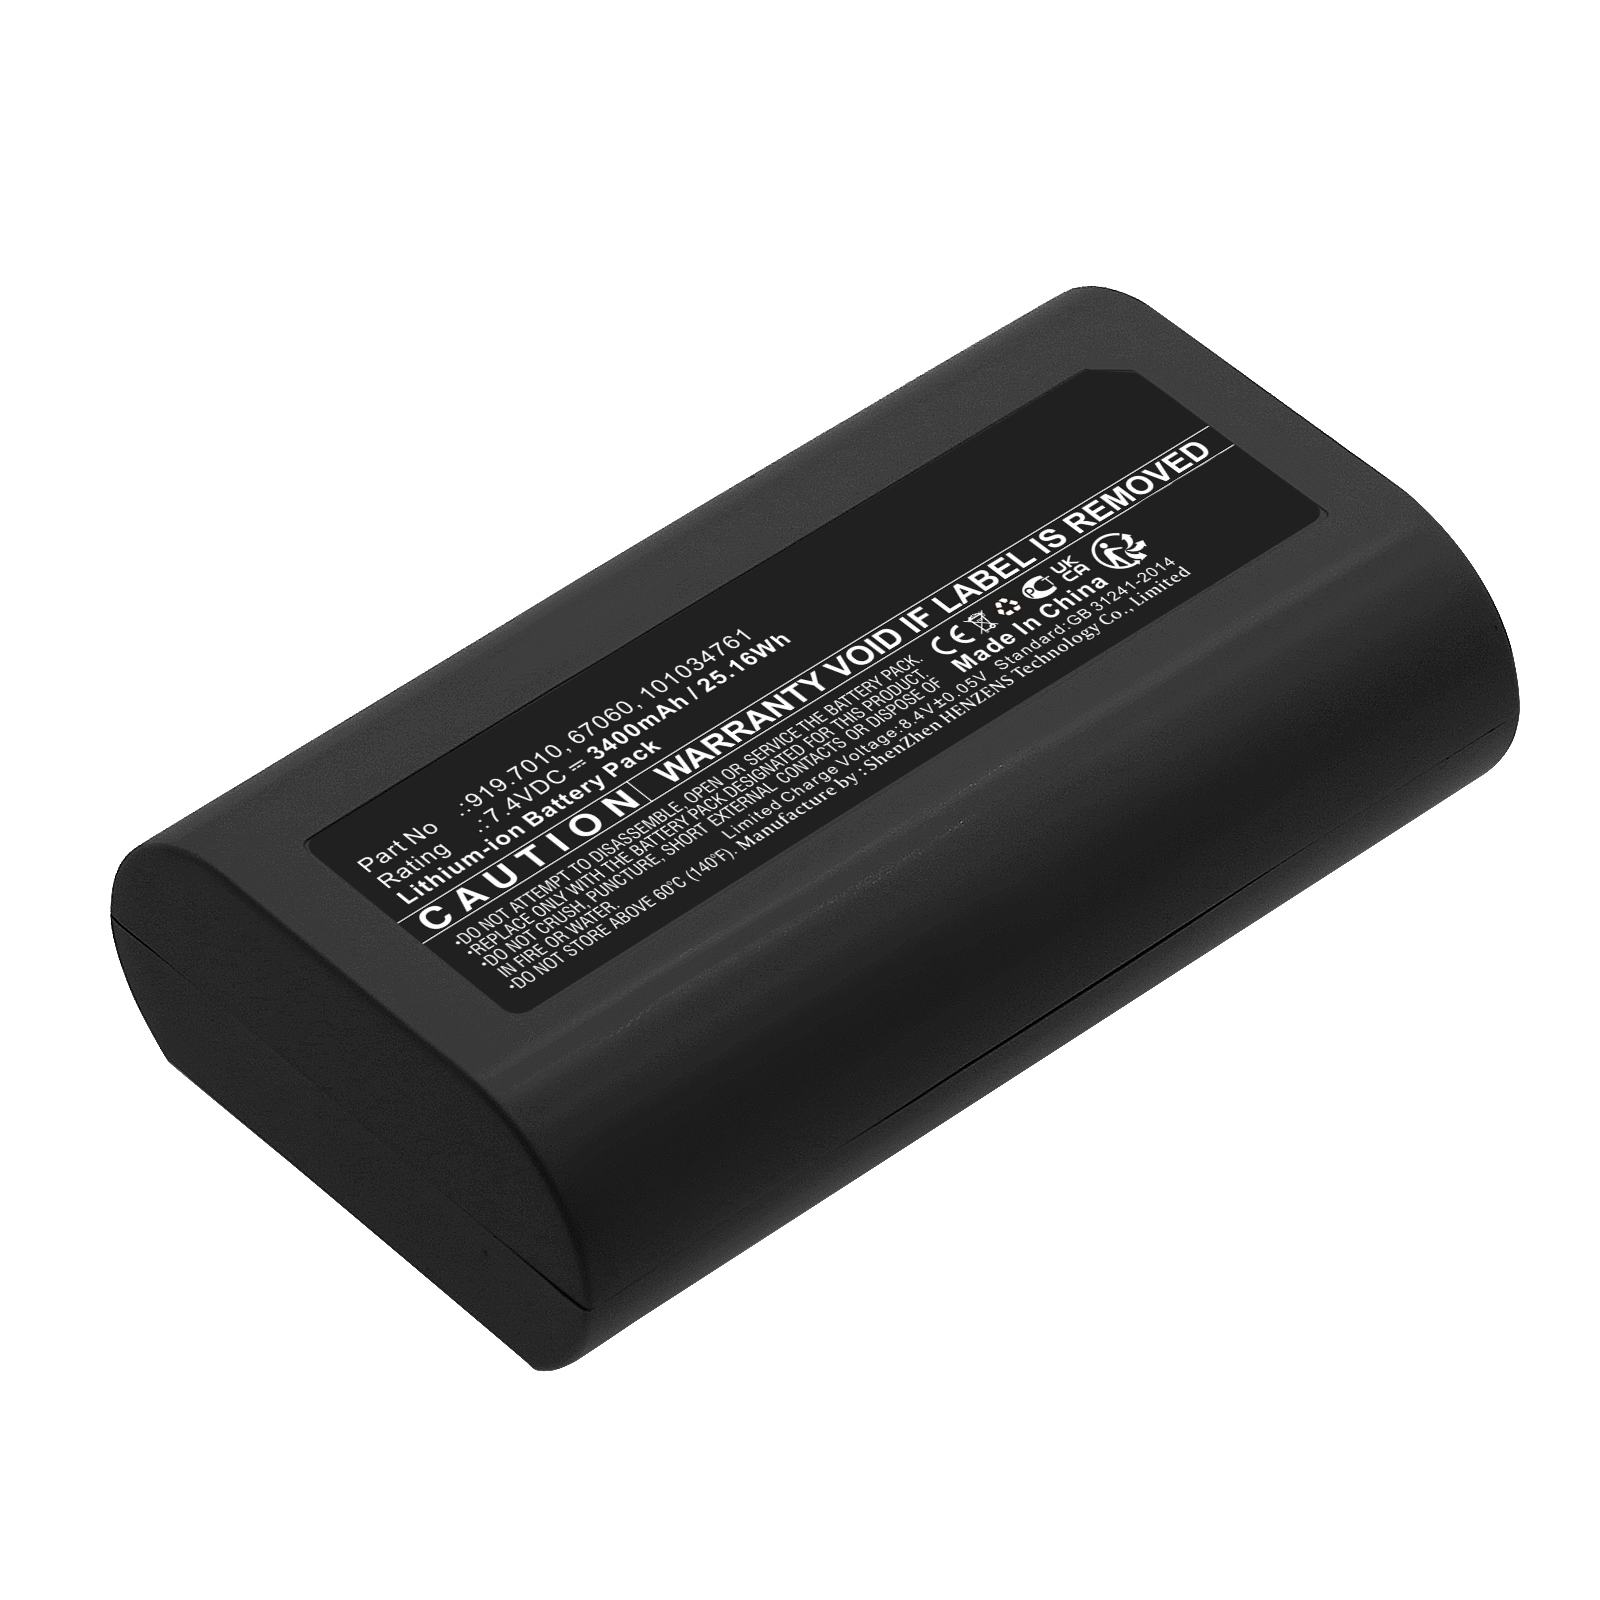 Synergy Digital Medical Battery, Compatible with Medela 67060 Medical Battery (Li-ion, 7.4V, 3400mAh)